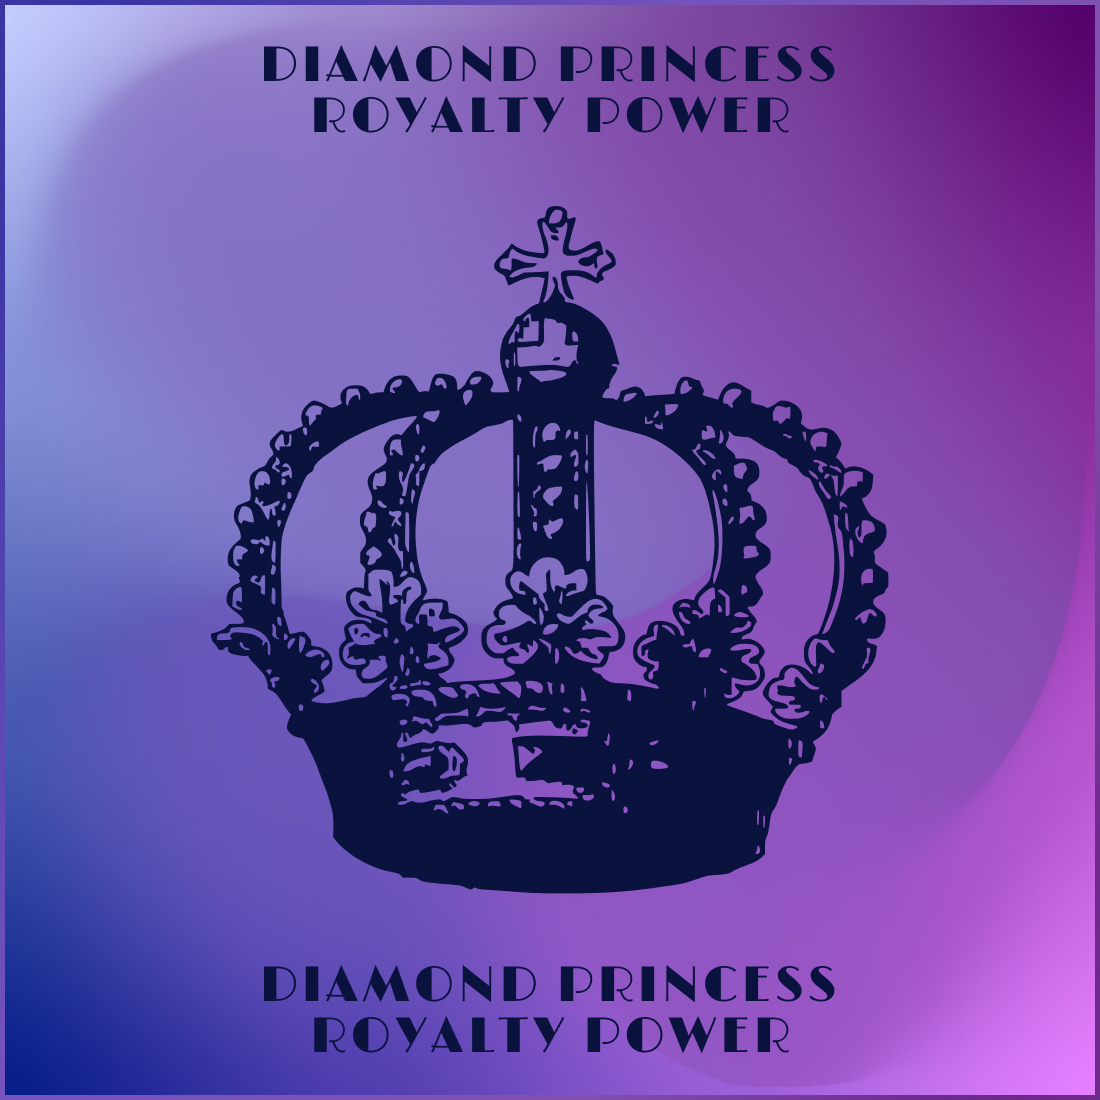 Diamond Princess Royalty Power main cover.